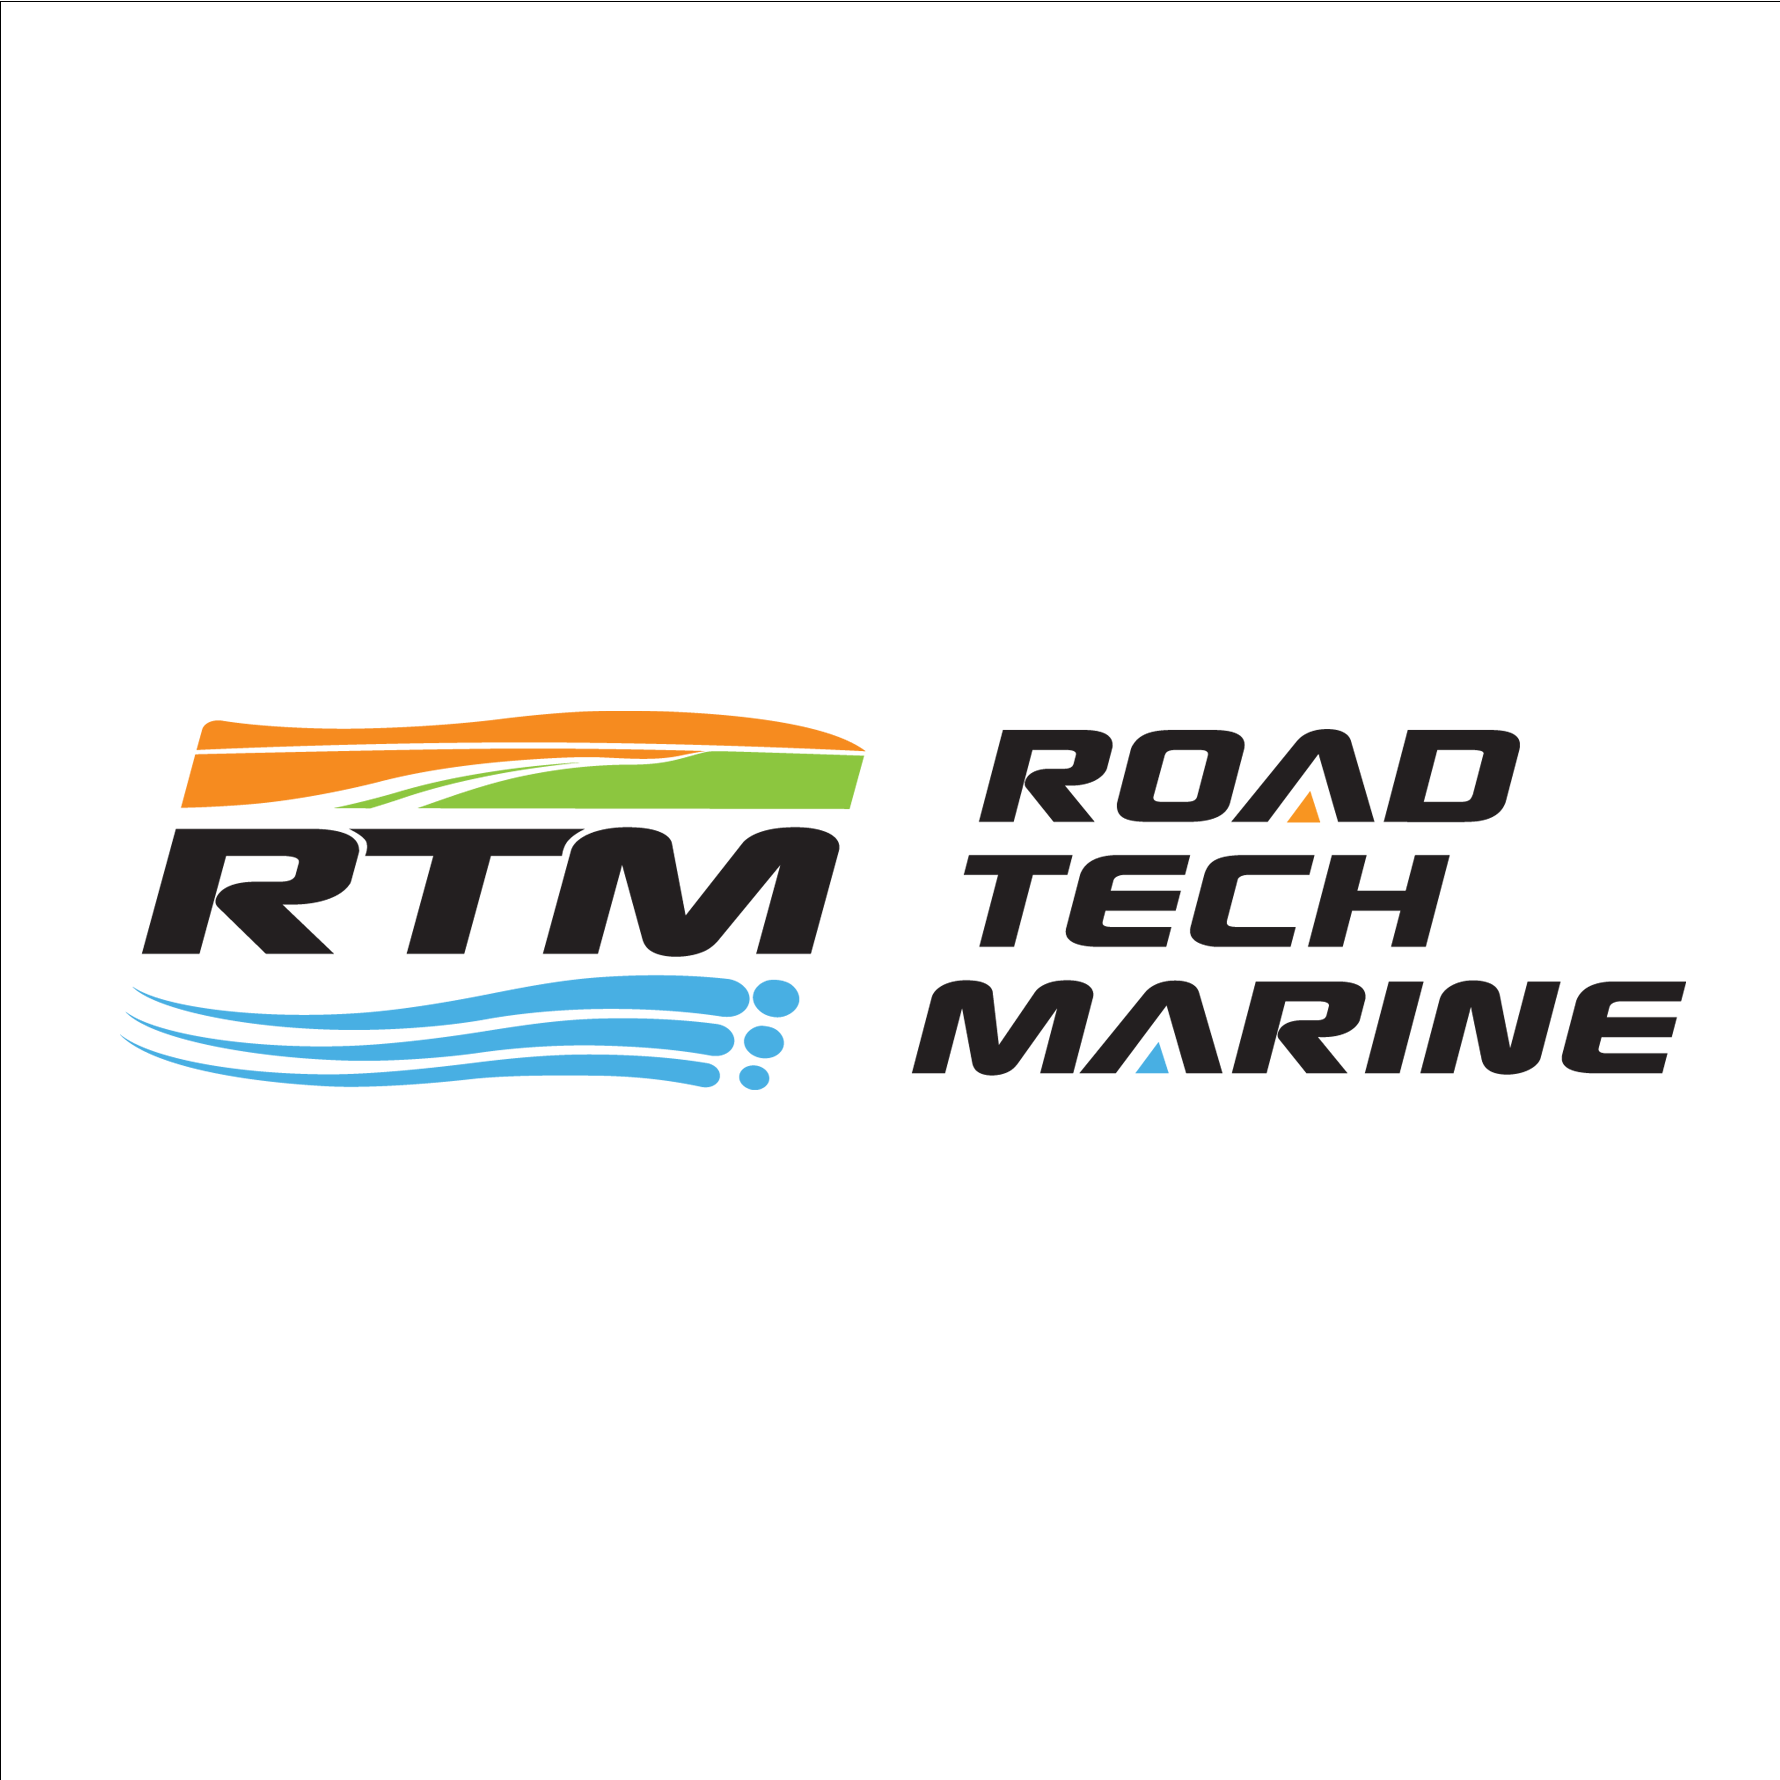 RTM - Road Tech Marine Capalaba - Capalaba, QLD 4157 - (07) 3914 9543 | ShowMeLocal.com